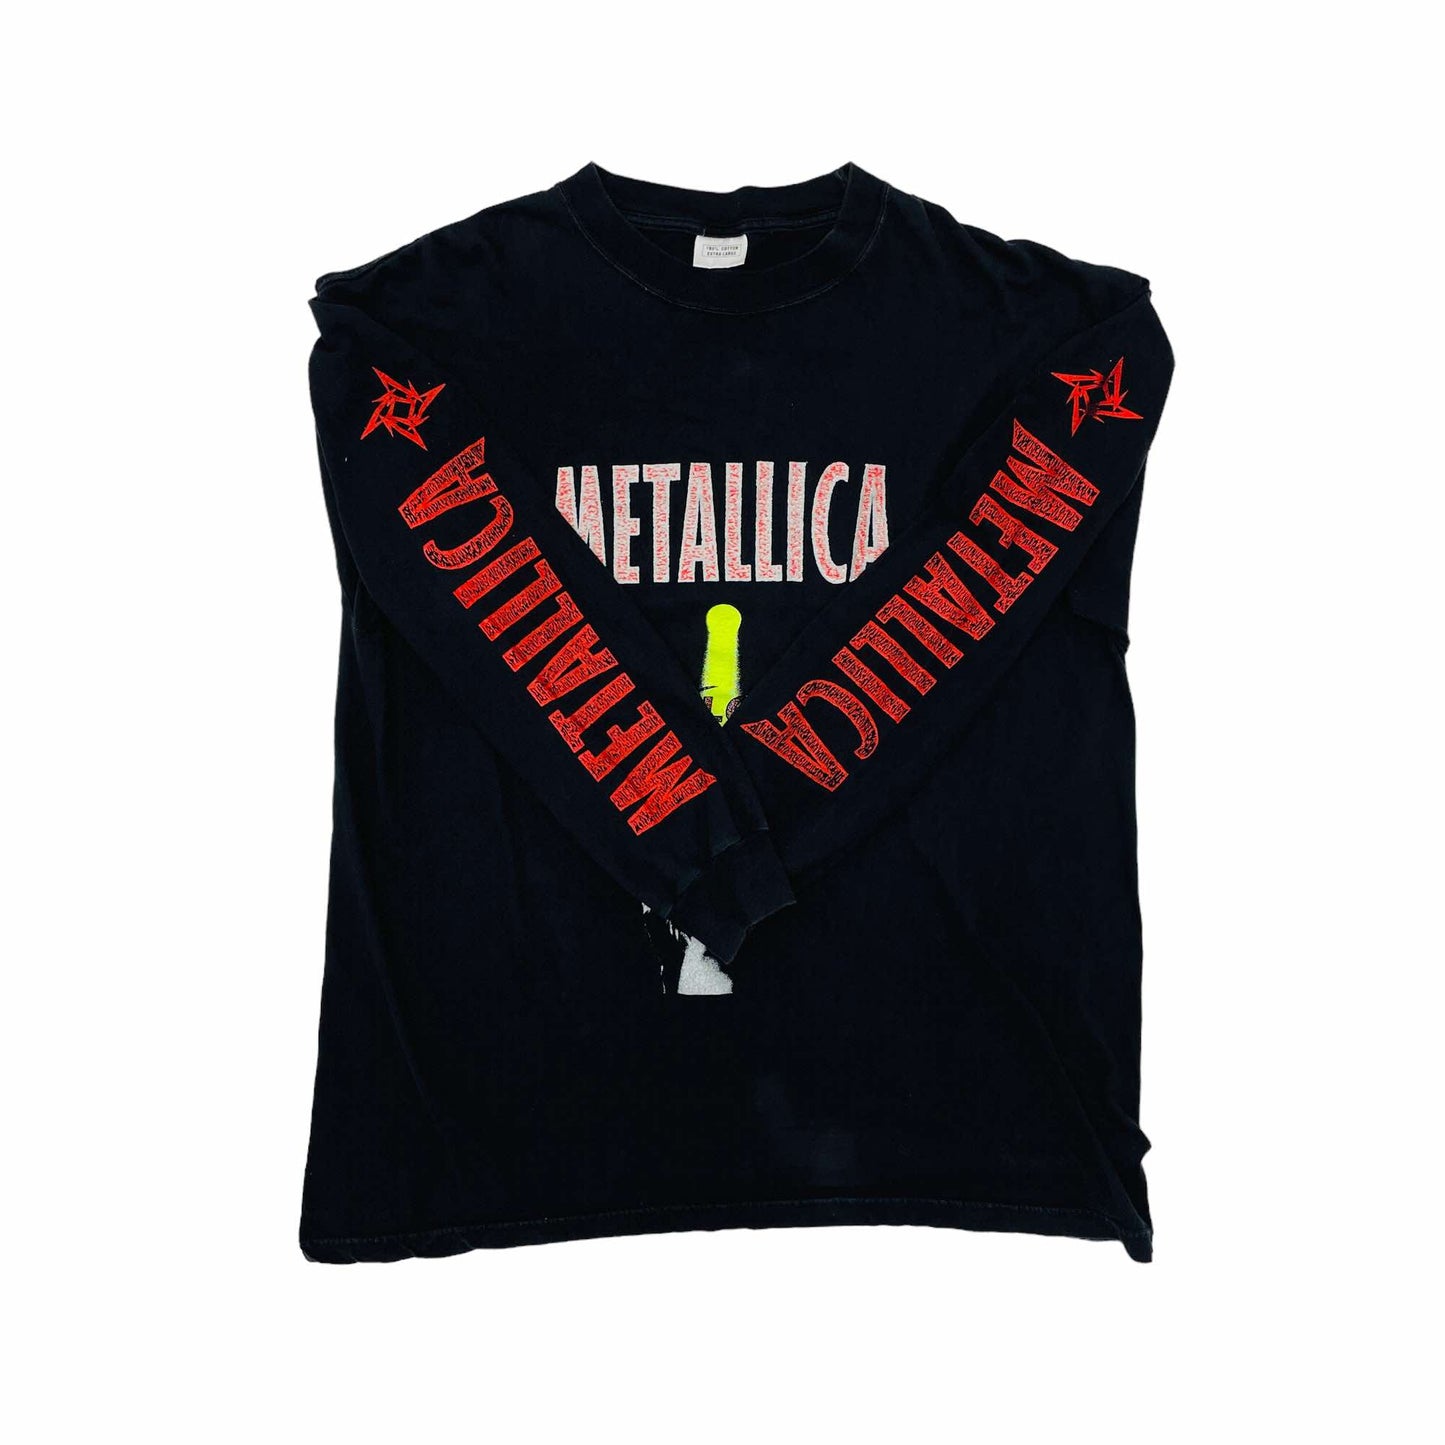 
                  
                    Metallica "Reload" Long Sleeve T-Shirt - XL
                  
                